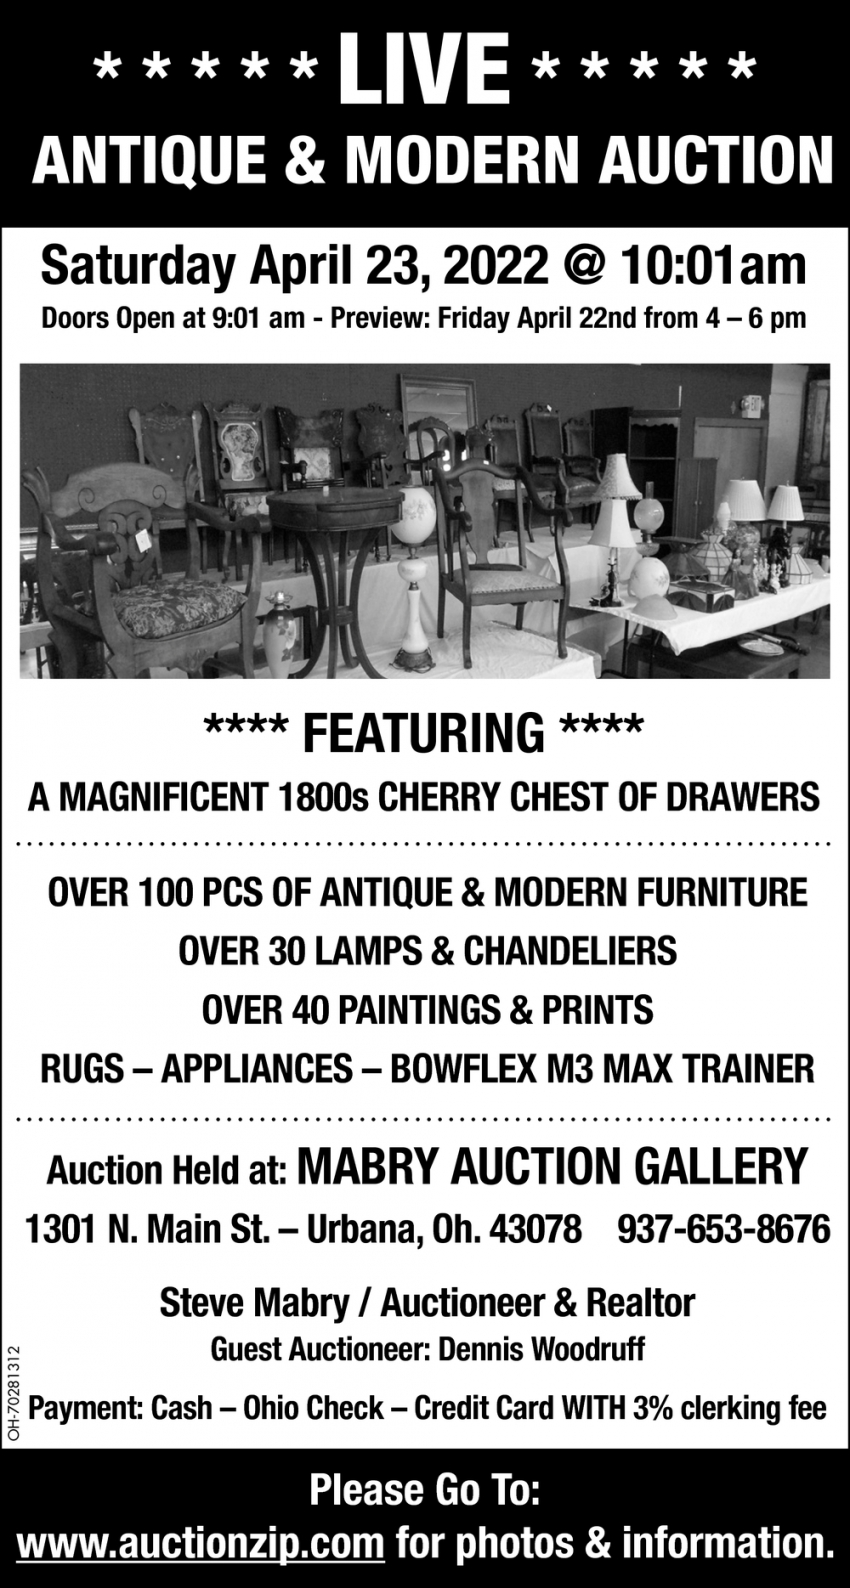 Live Antique & Modern Auction